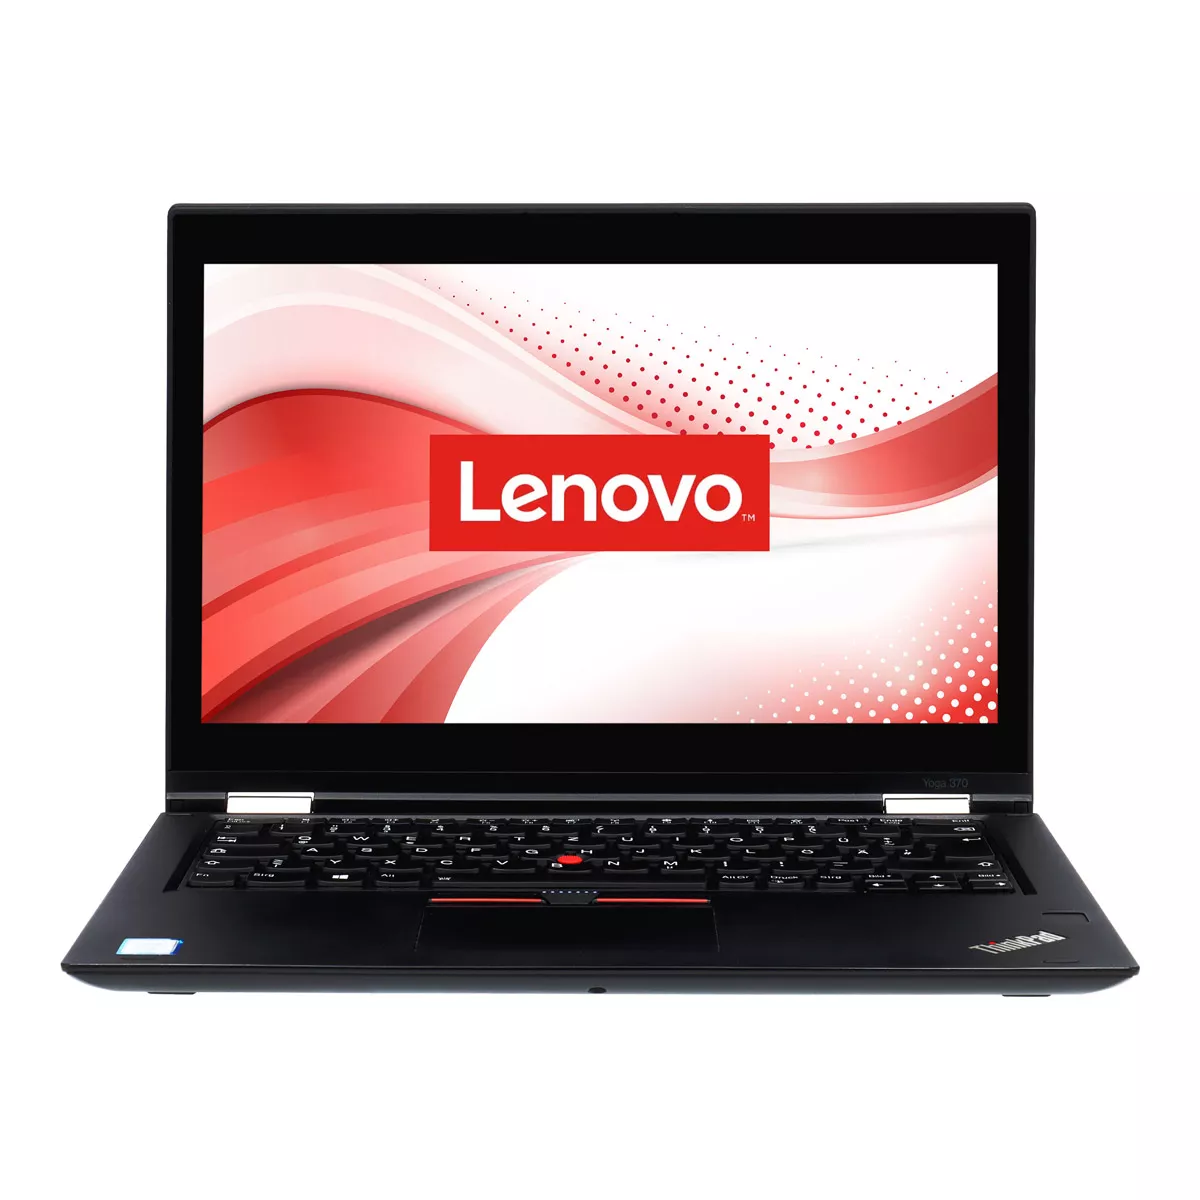 Lenovo ThinkPad X380 Yoga Core i5 8250U Touch 8 GB DDR4 240 GB M.2 SSD Webcam A